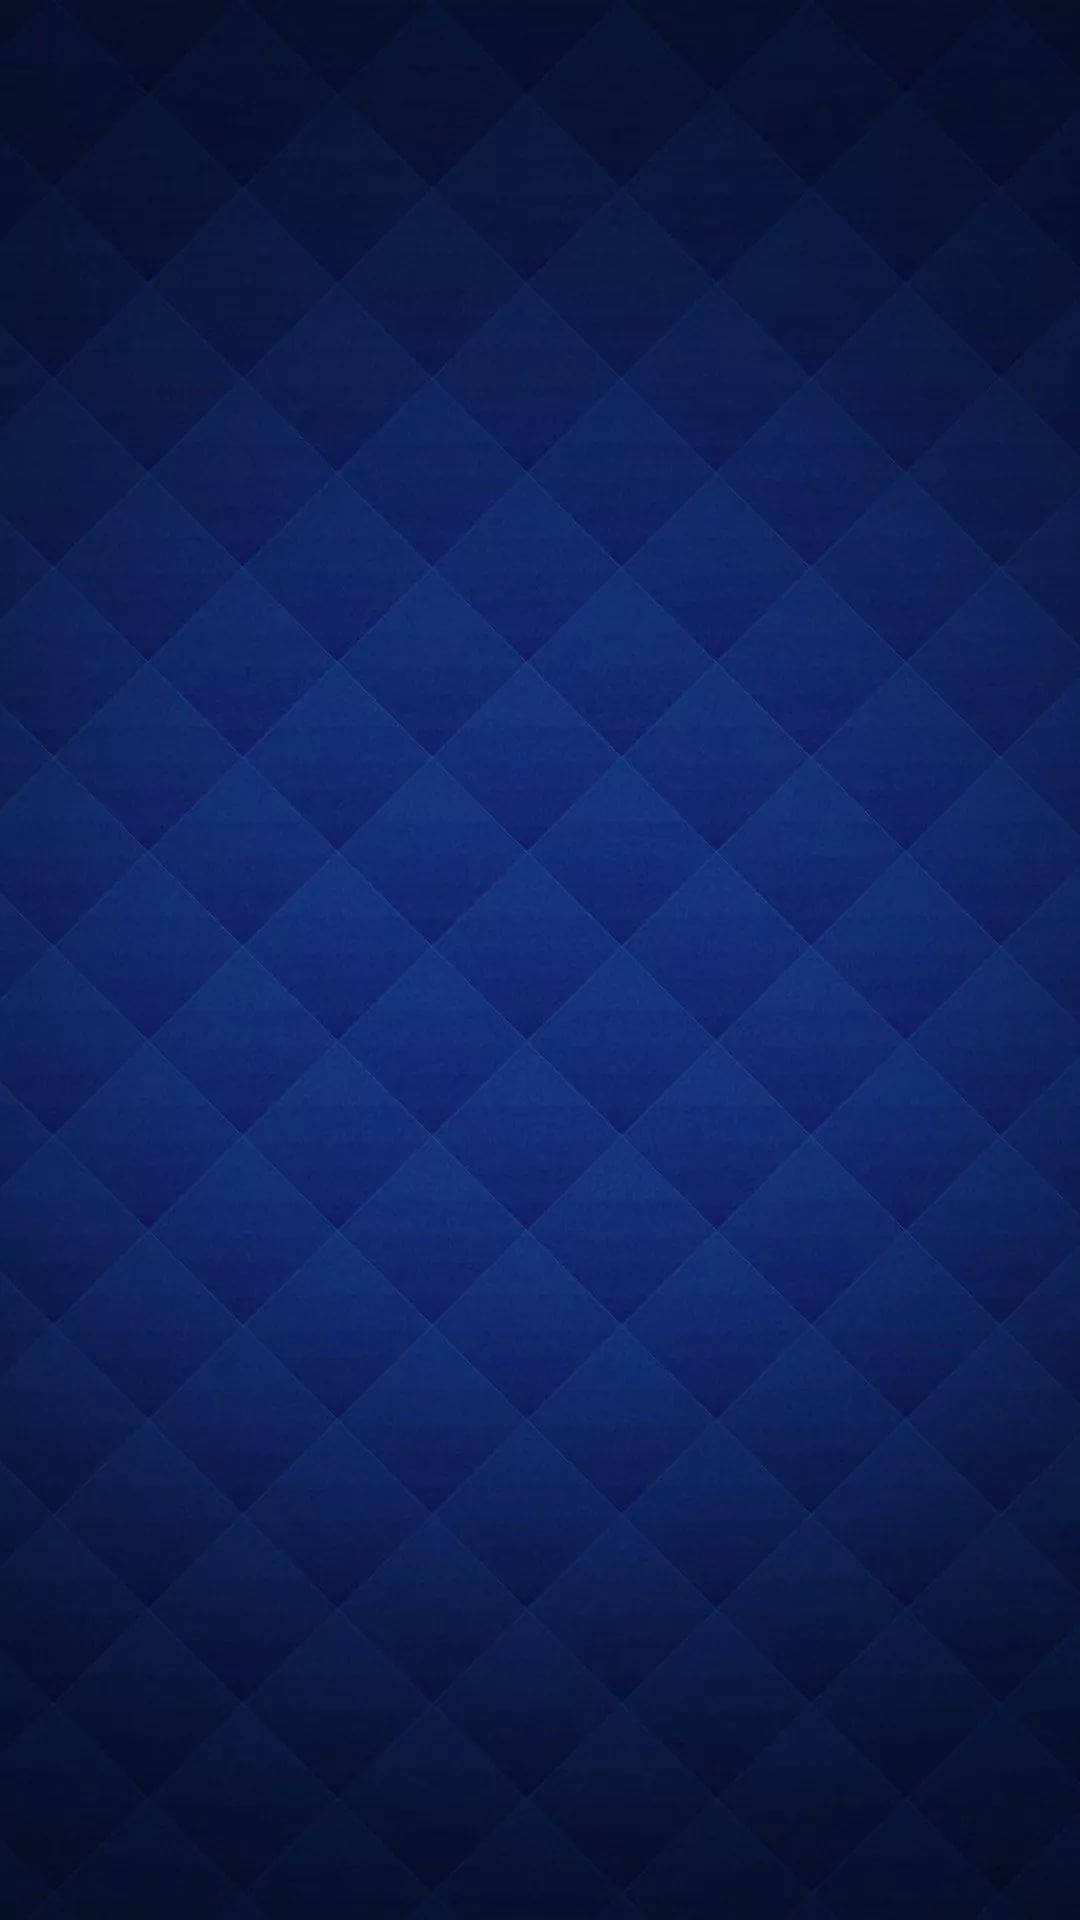 Fascinating Dark Blue Iphone Screensaver Wallpaper